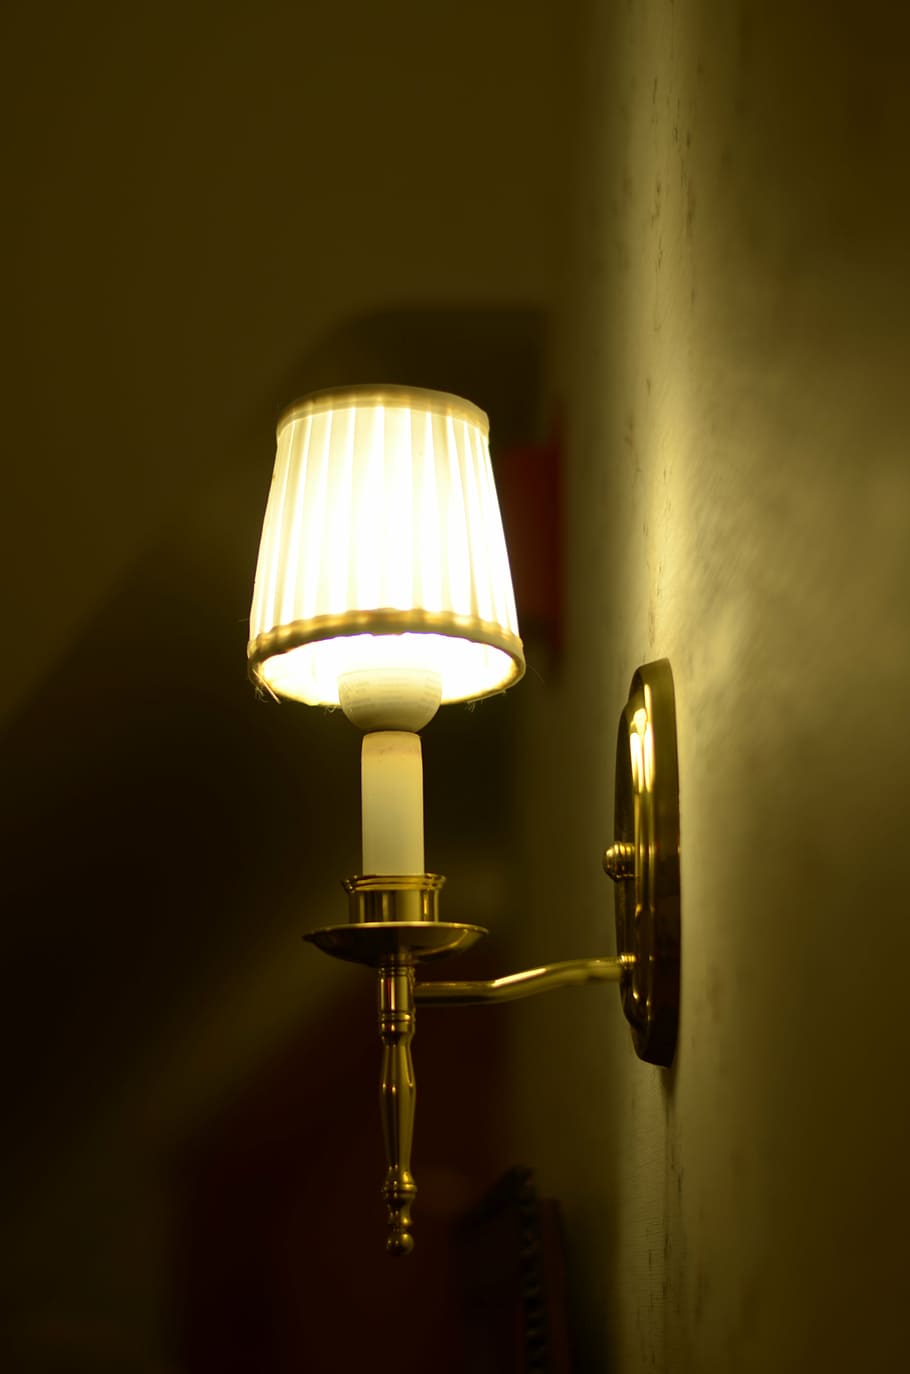 lamp, idea, dreamy, electric lamp, lighting equipment, lamp shade, HD wallpaper